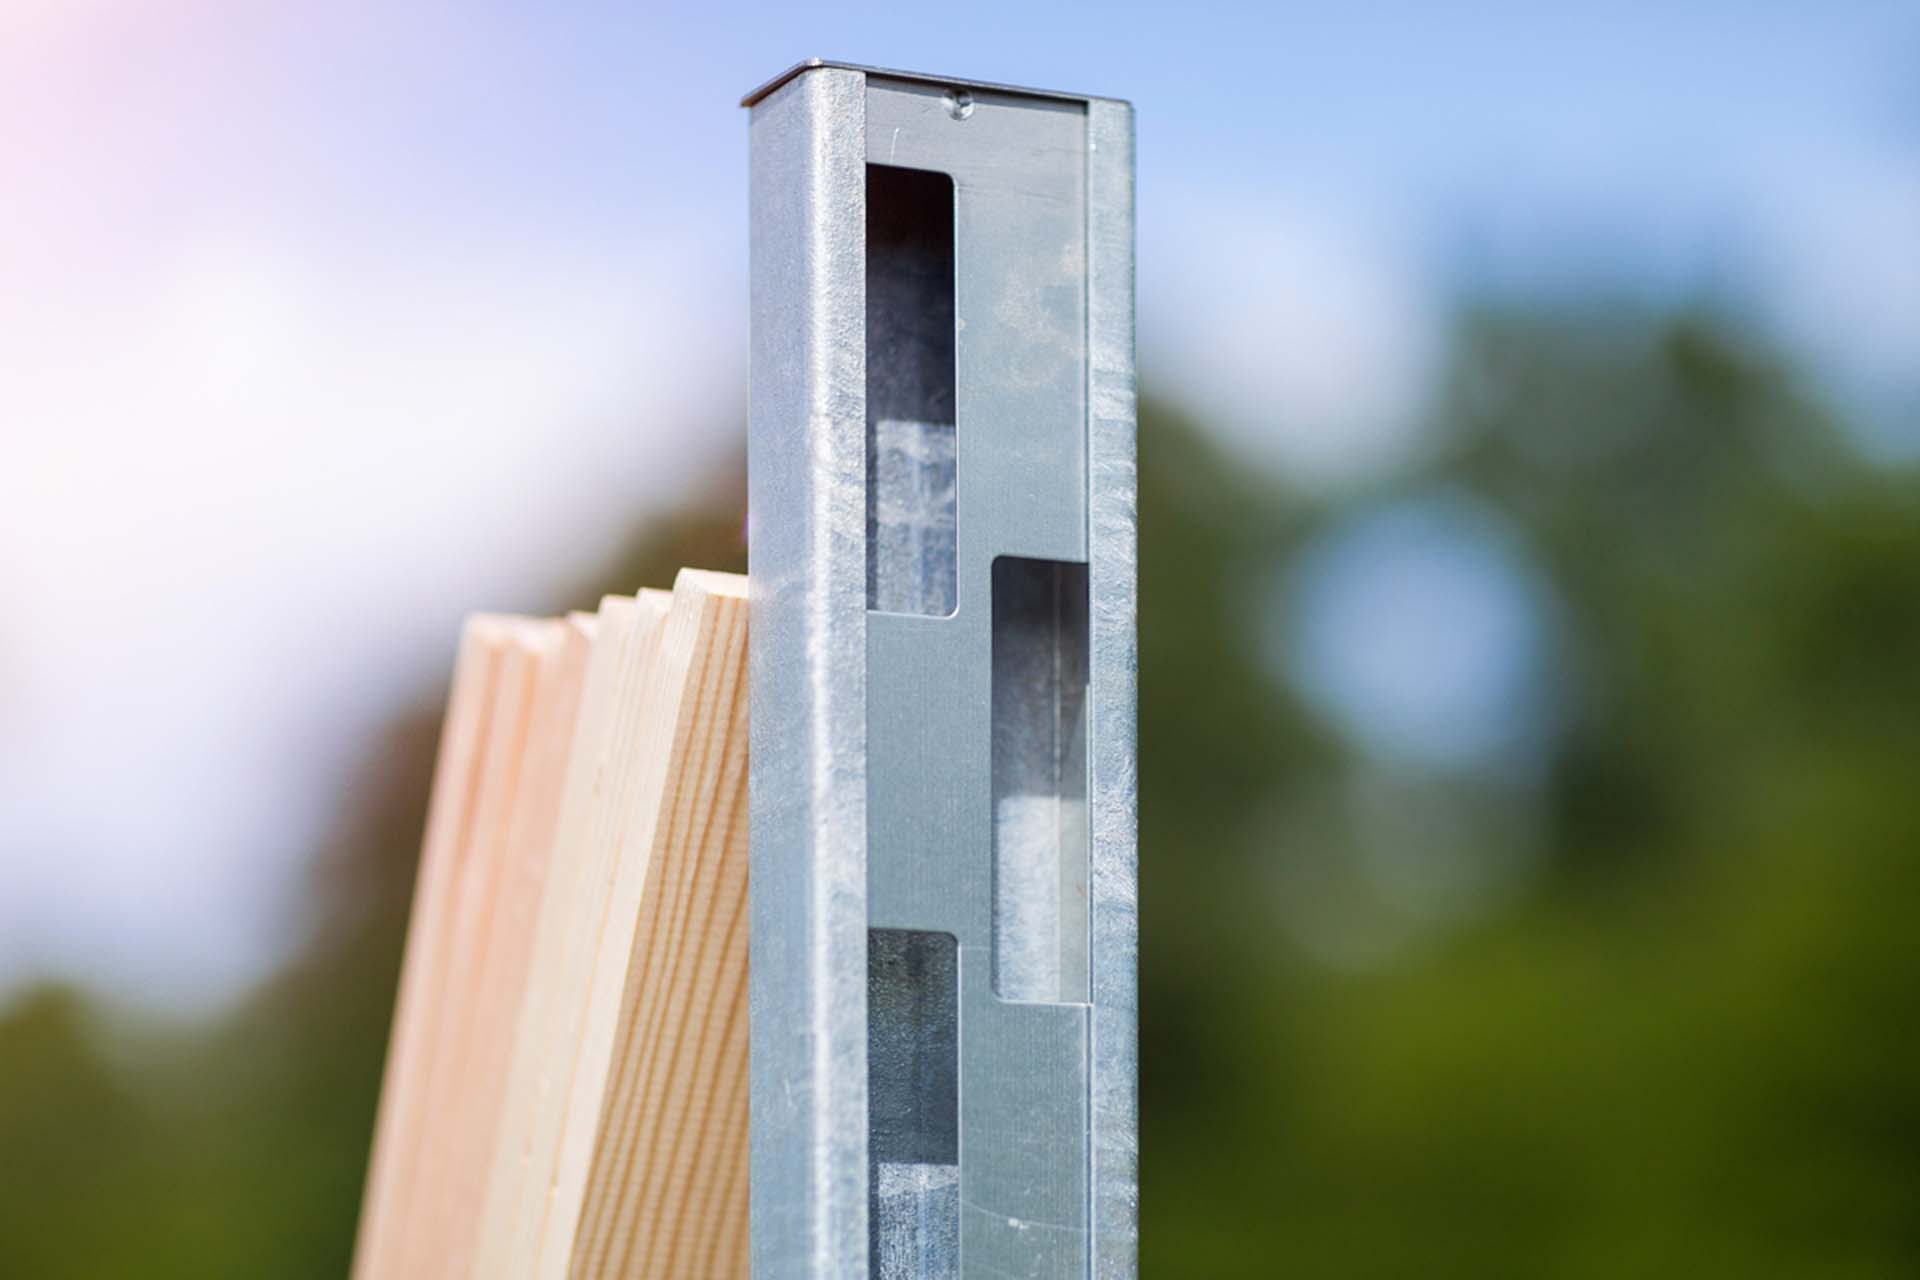 Detailaufnahme eines Metallprofils mit Aussparungen zur schraubfreien Befestigung von Holzbrettern.